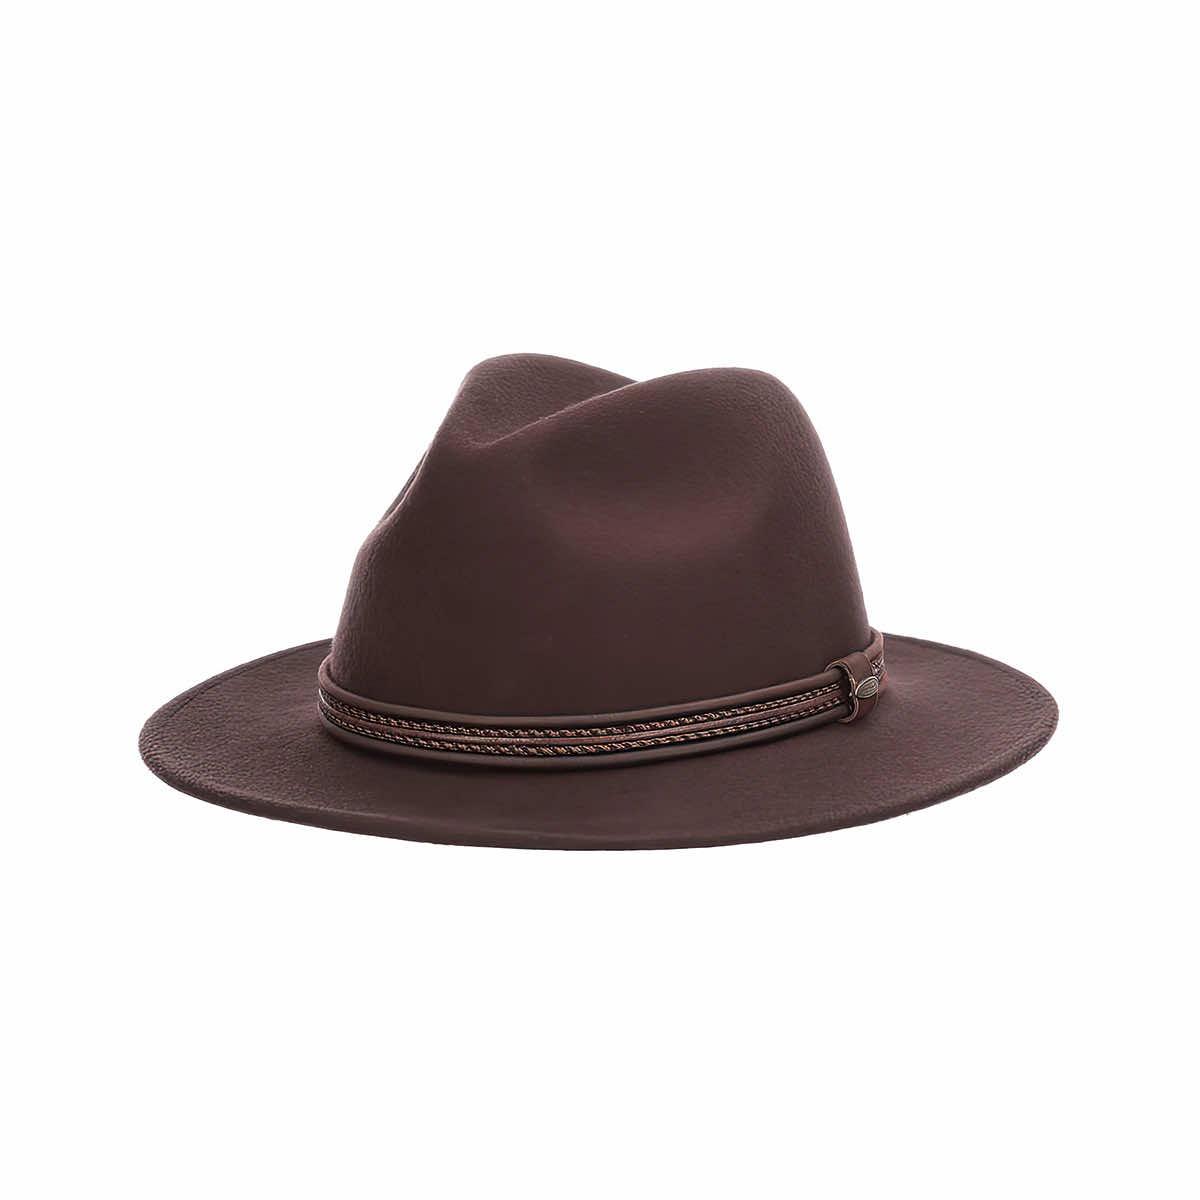 Mast General Store  Men's Cobar Wool Safari Hat